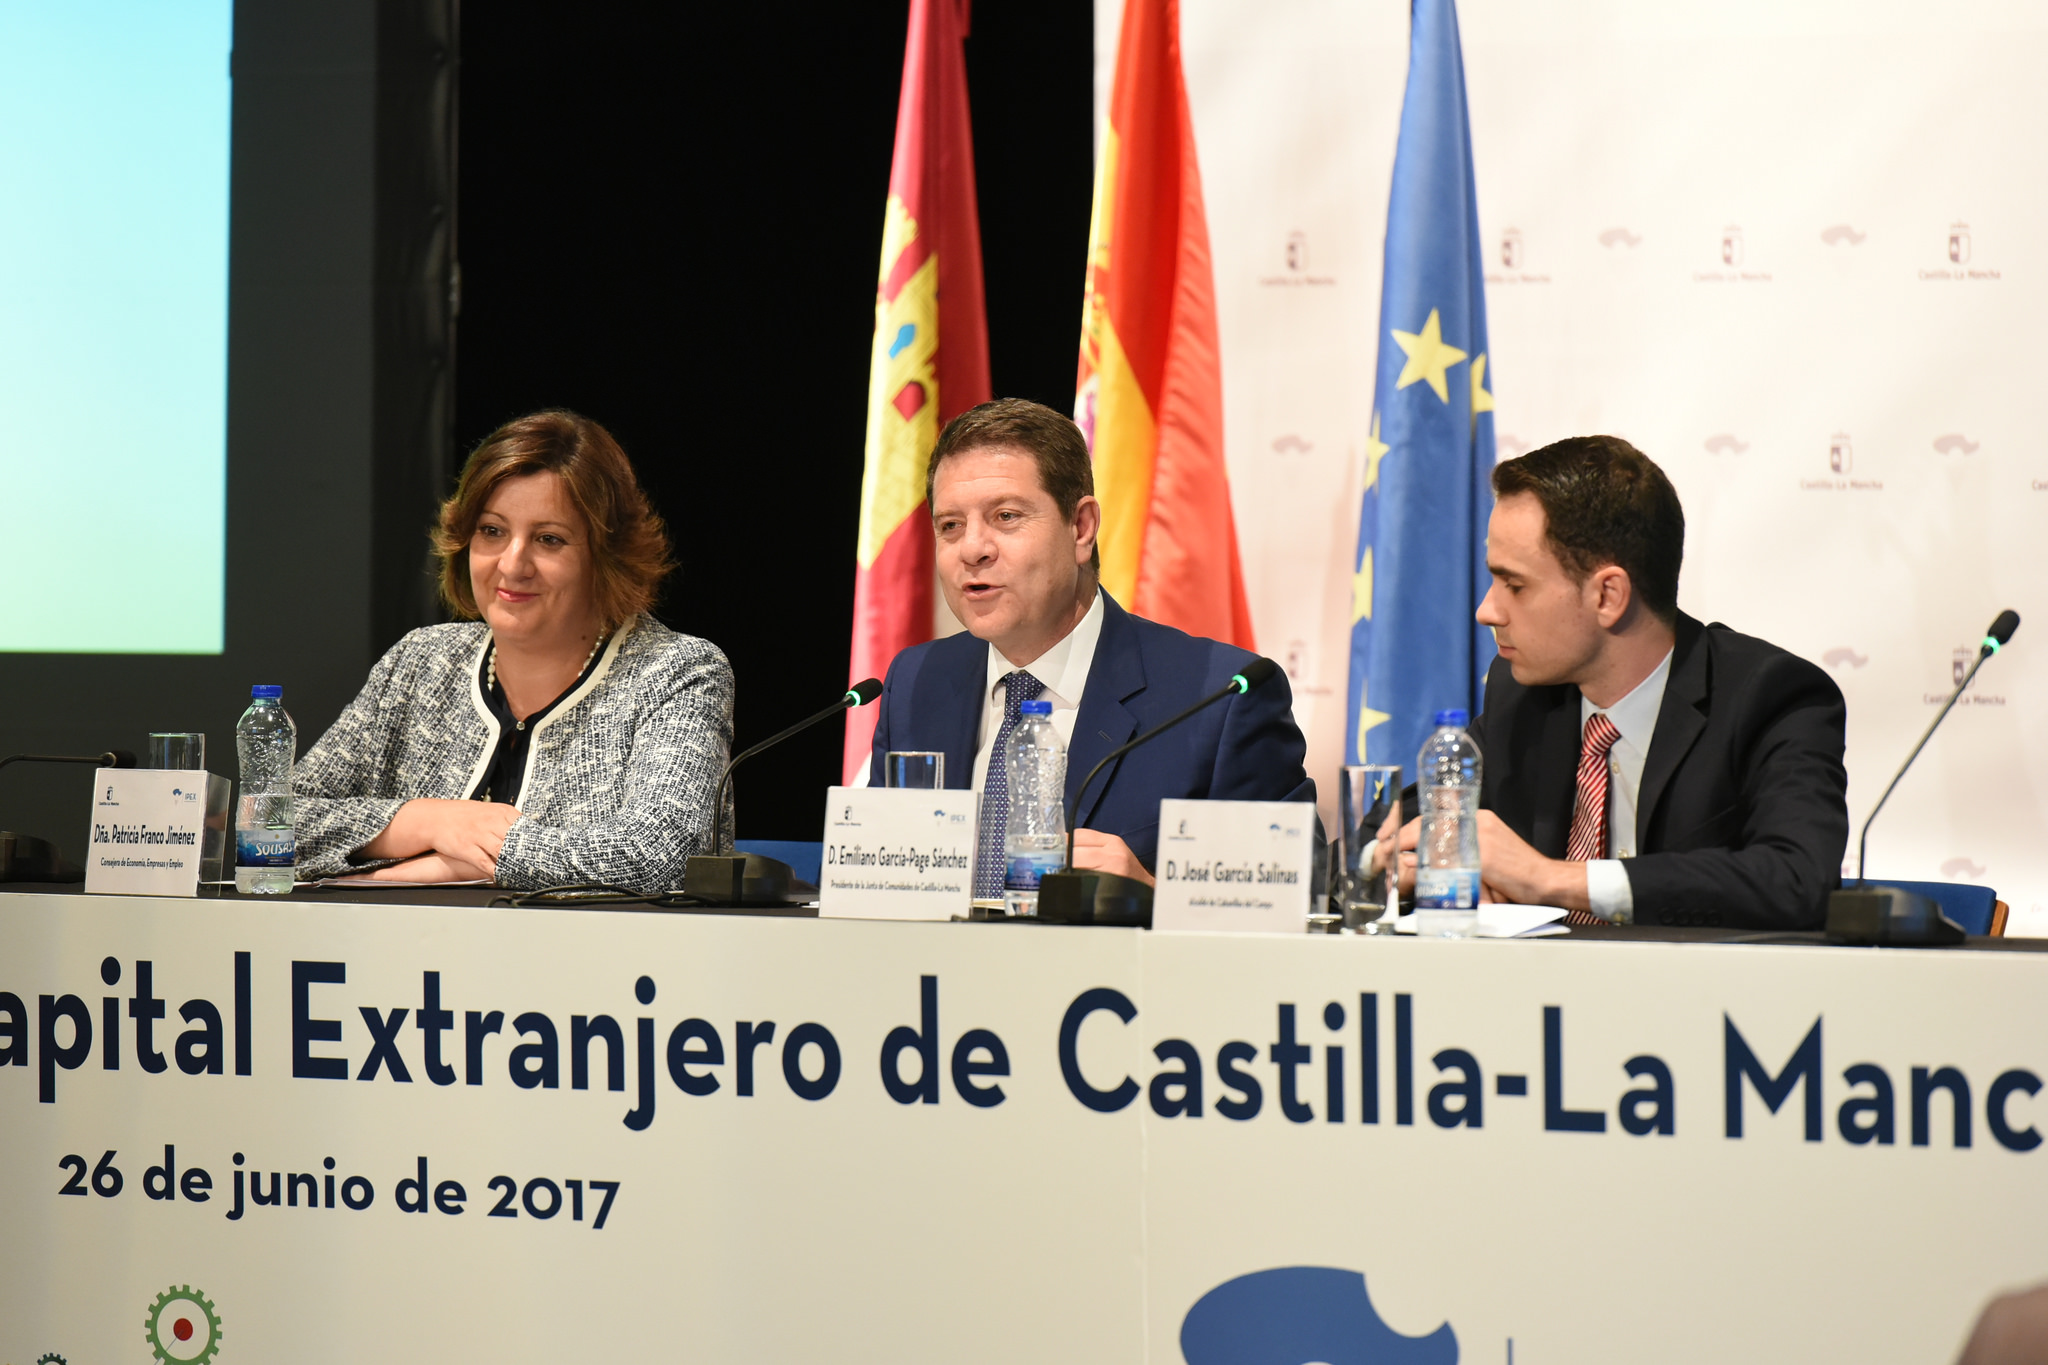 Page en el I Foro de Capital Extranjero en Castilla-La Mancha.